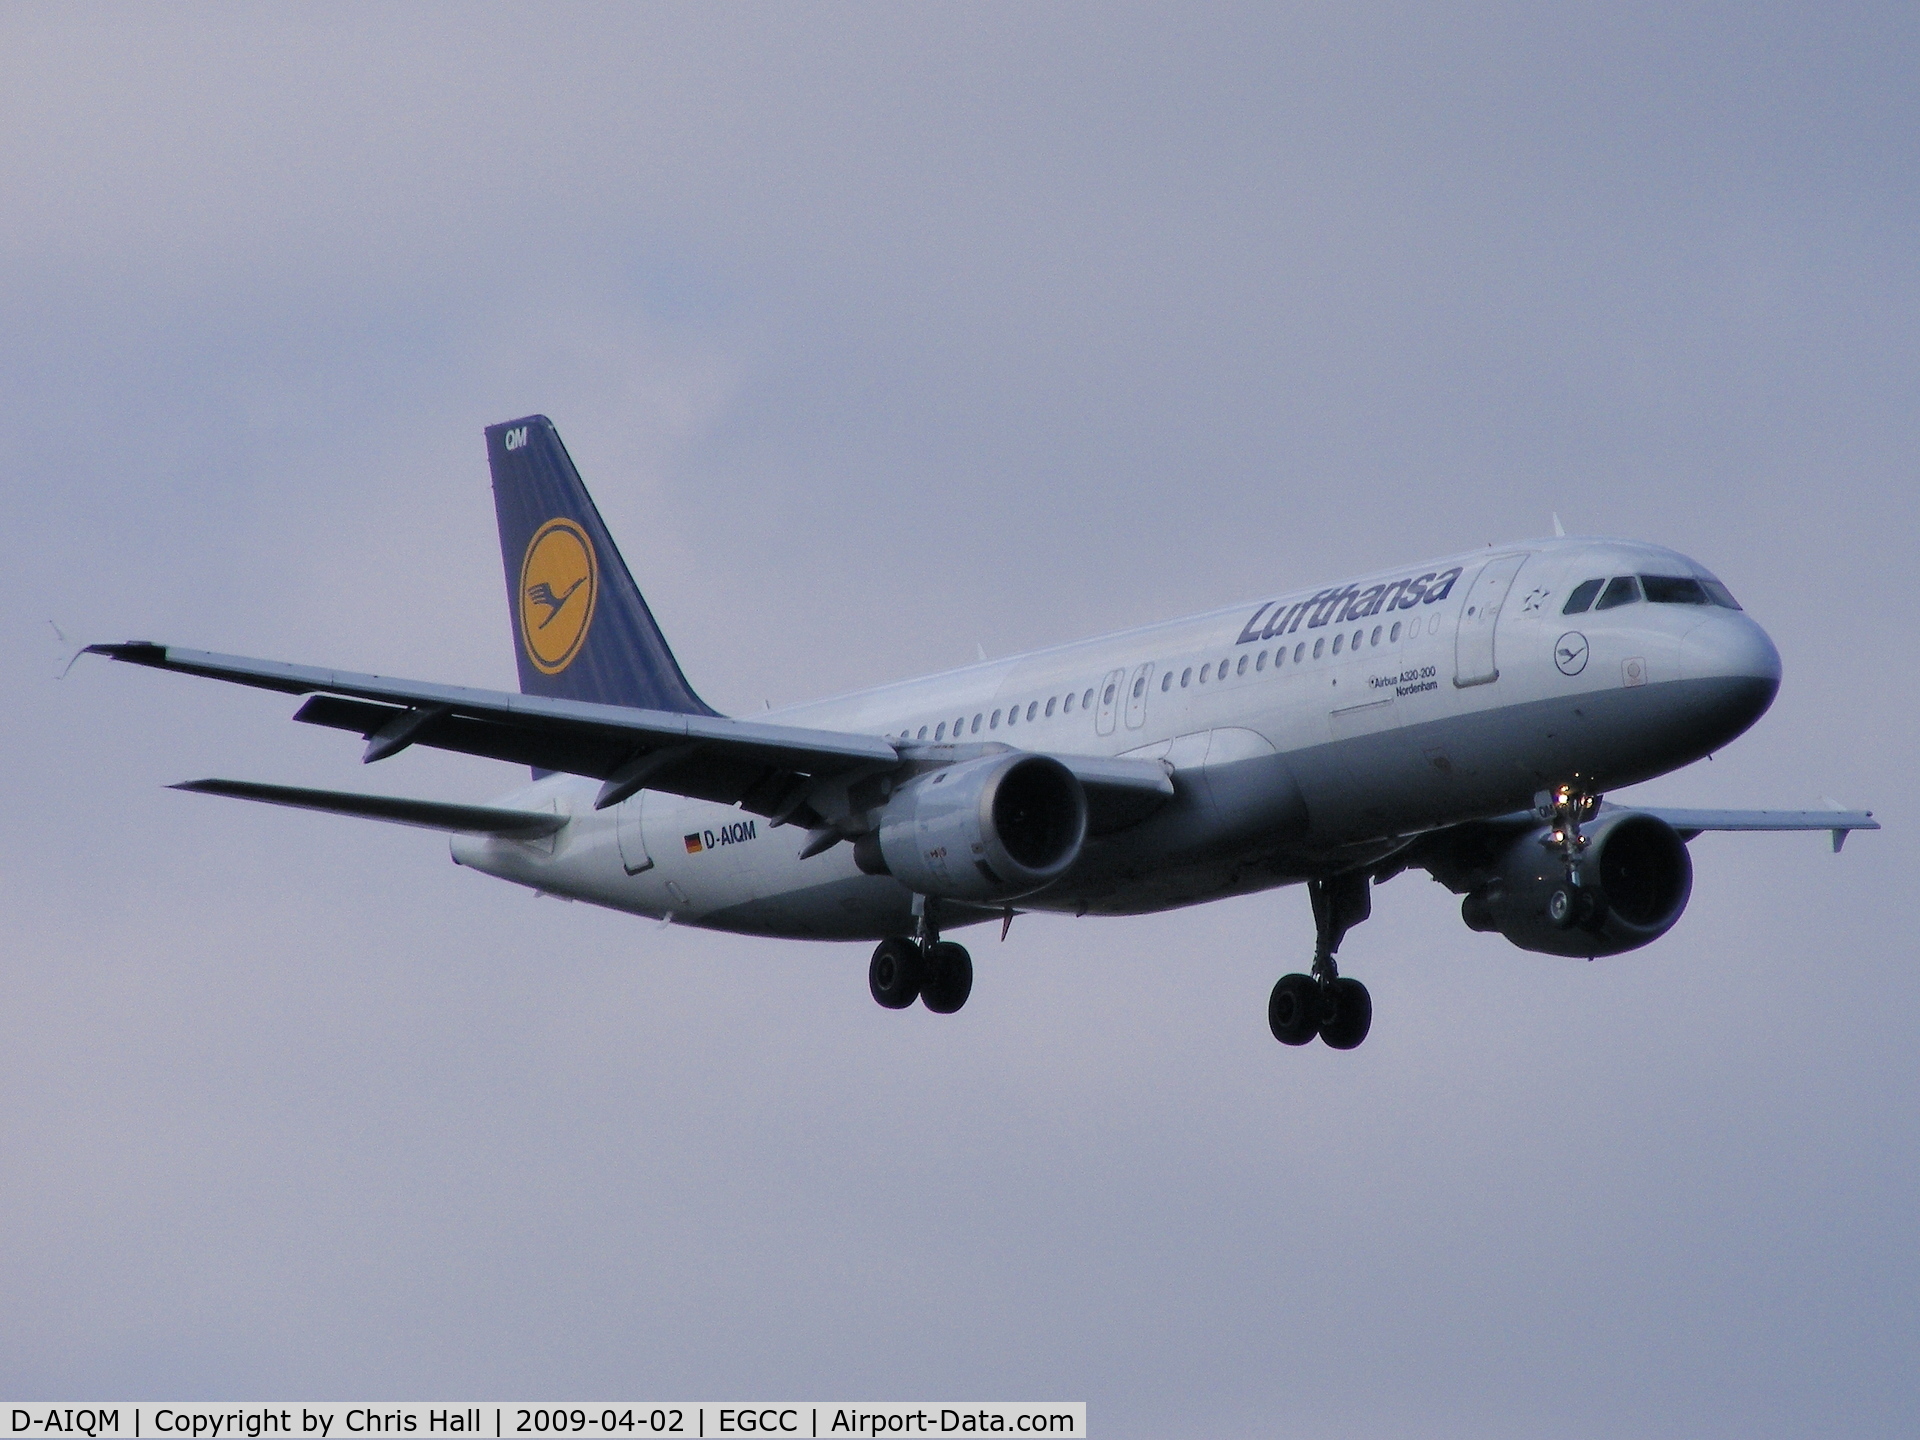 D-AIQM, 1991 Airbus A320-211 C/N 0268, Lufthansa